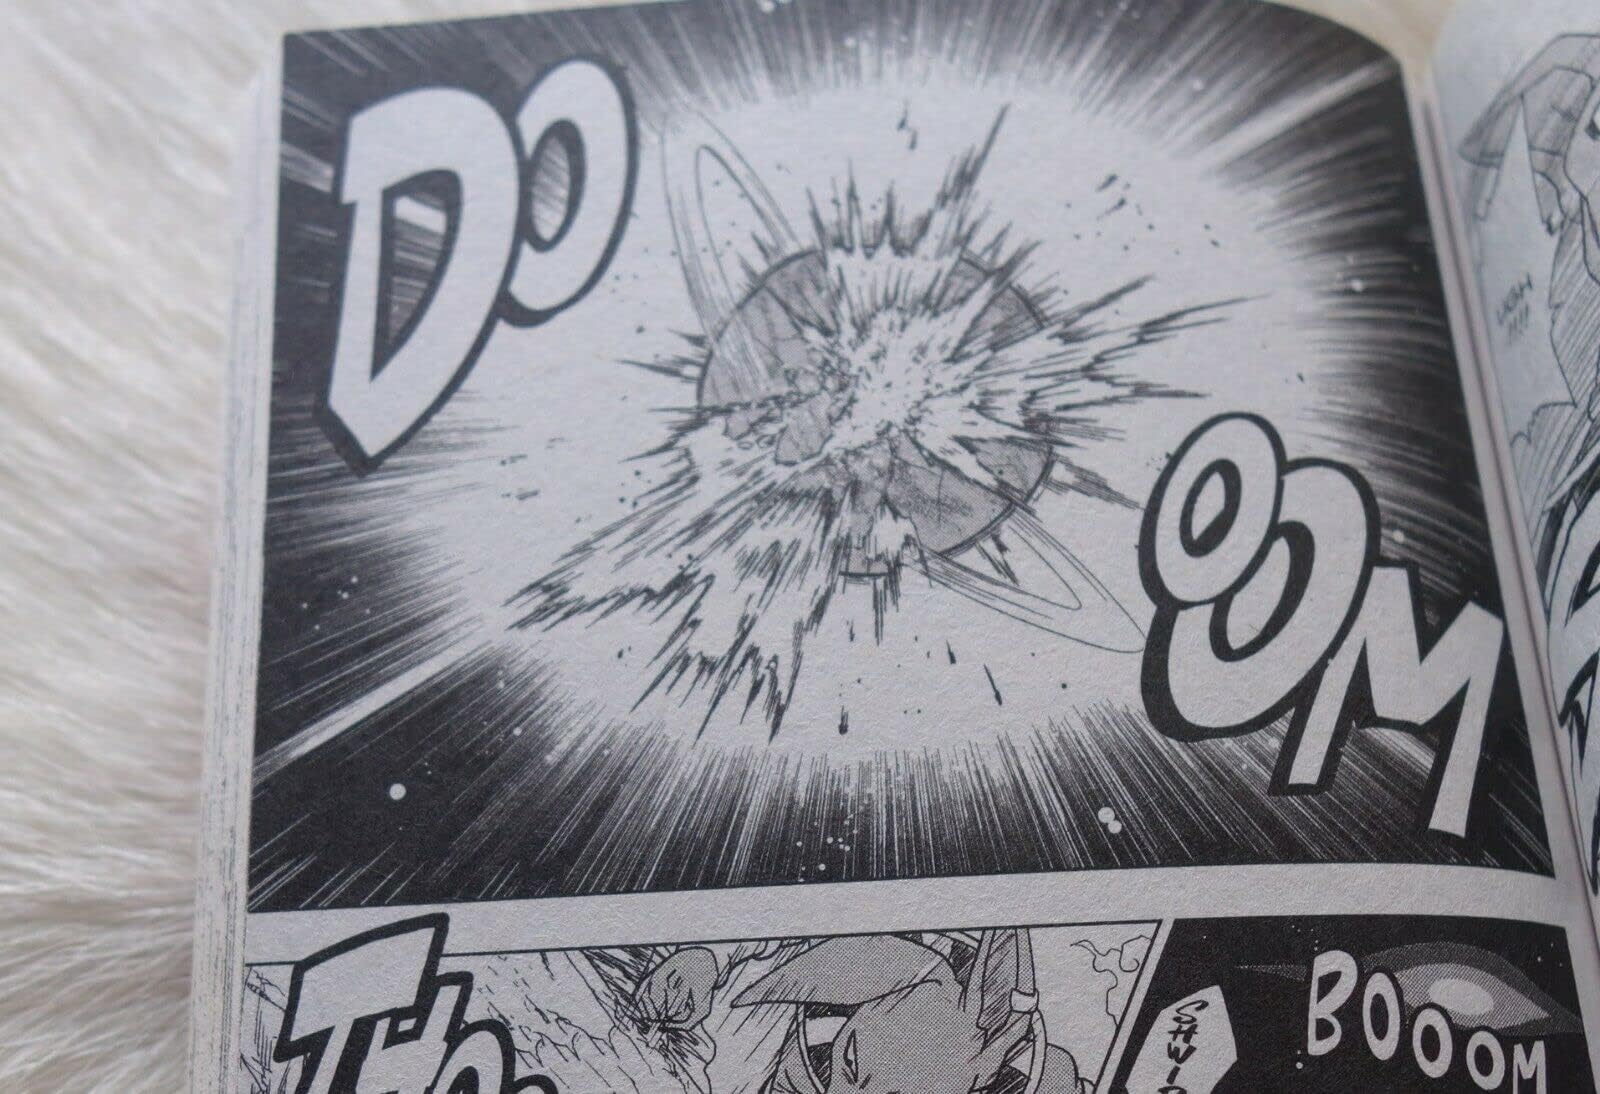 Dragon Ball Super, Vol. 1 (1)